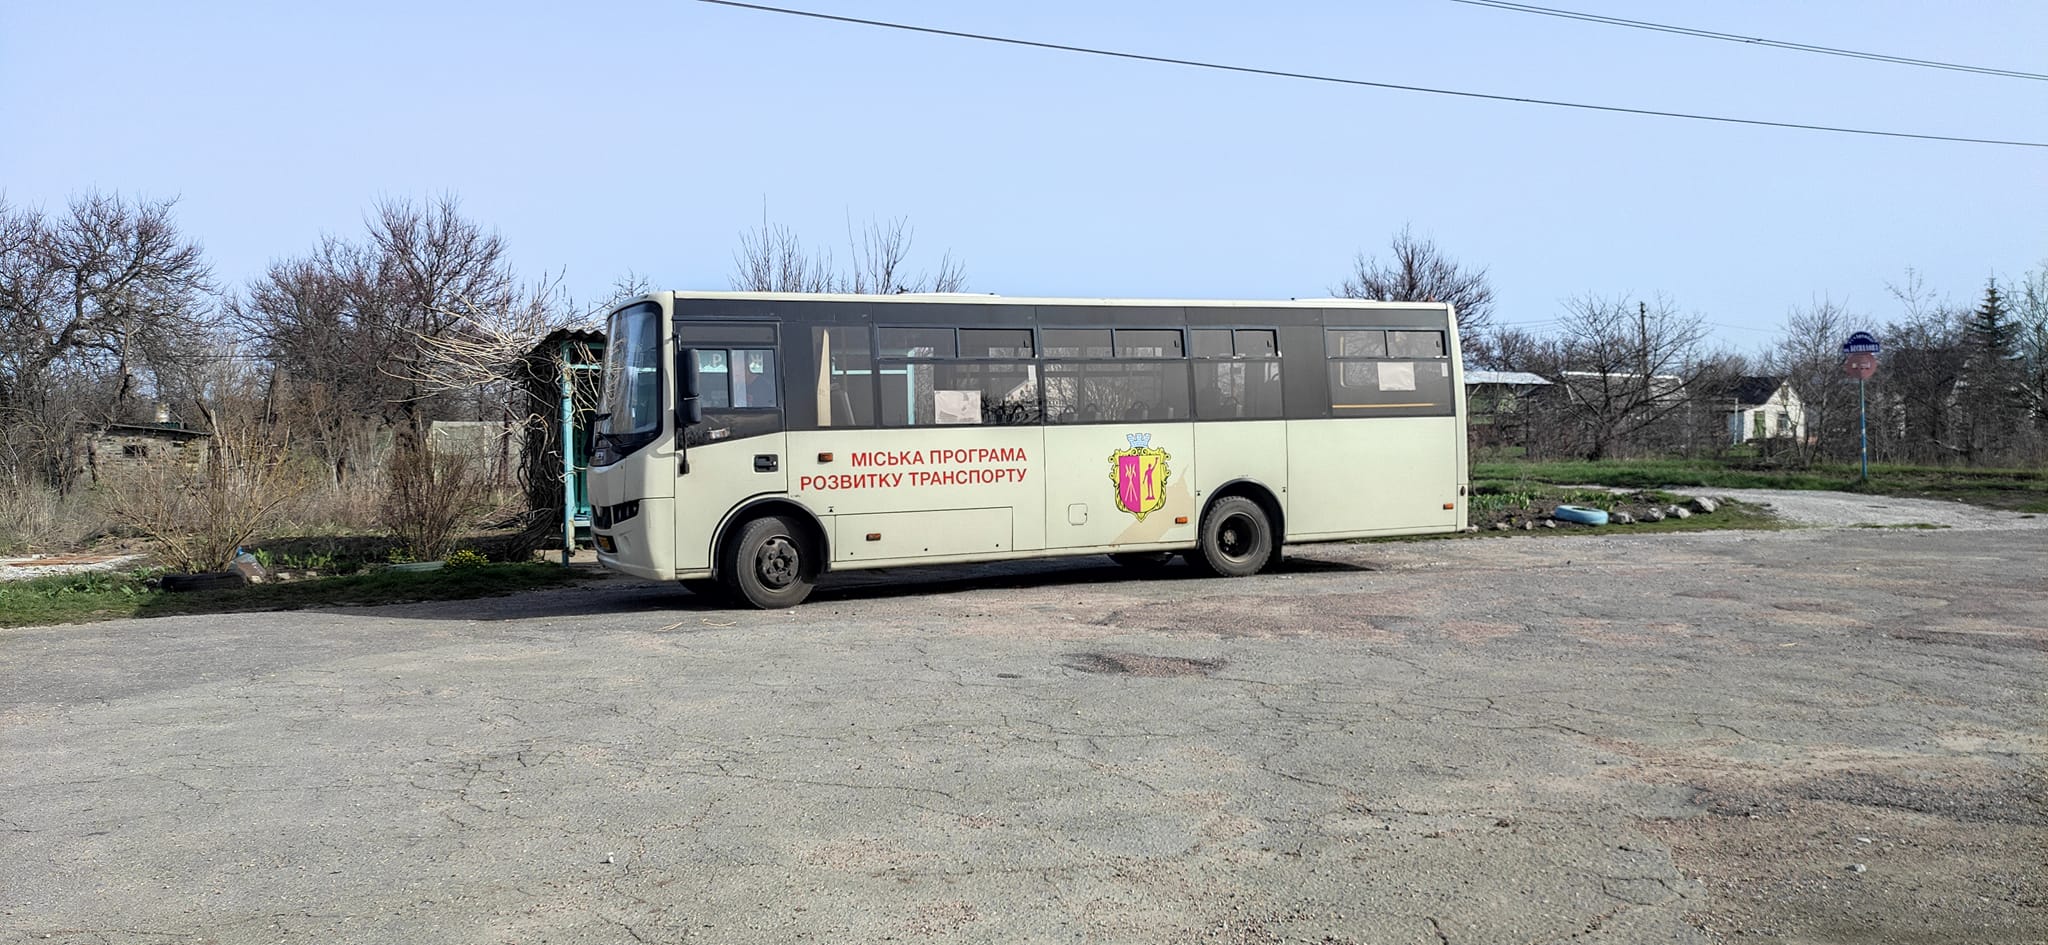 У Кам’янському розпочав роботу автобус на Верхні Сади